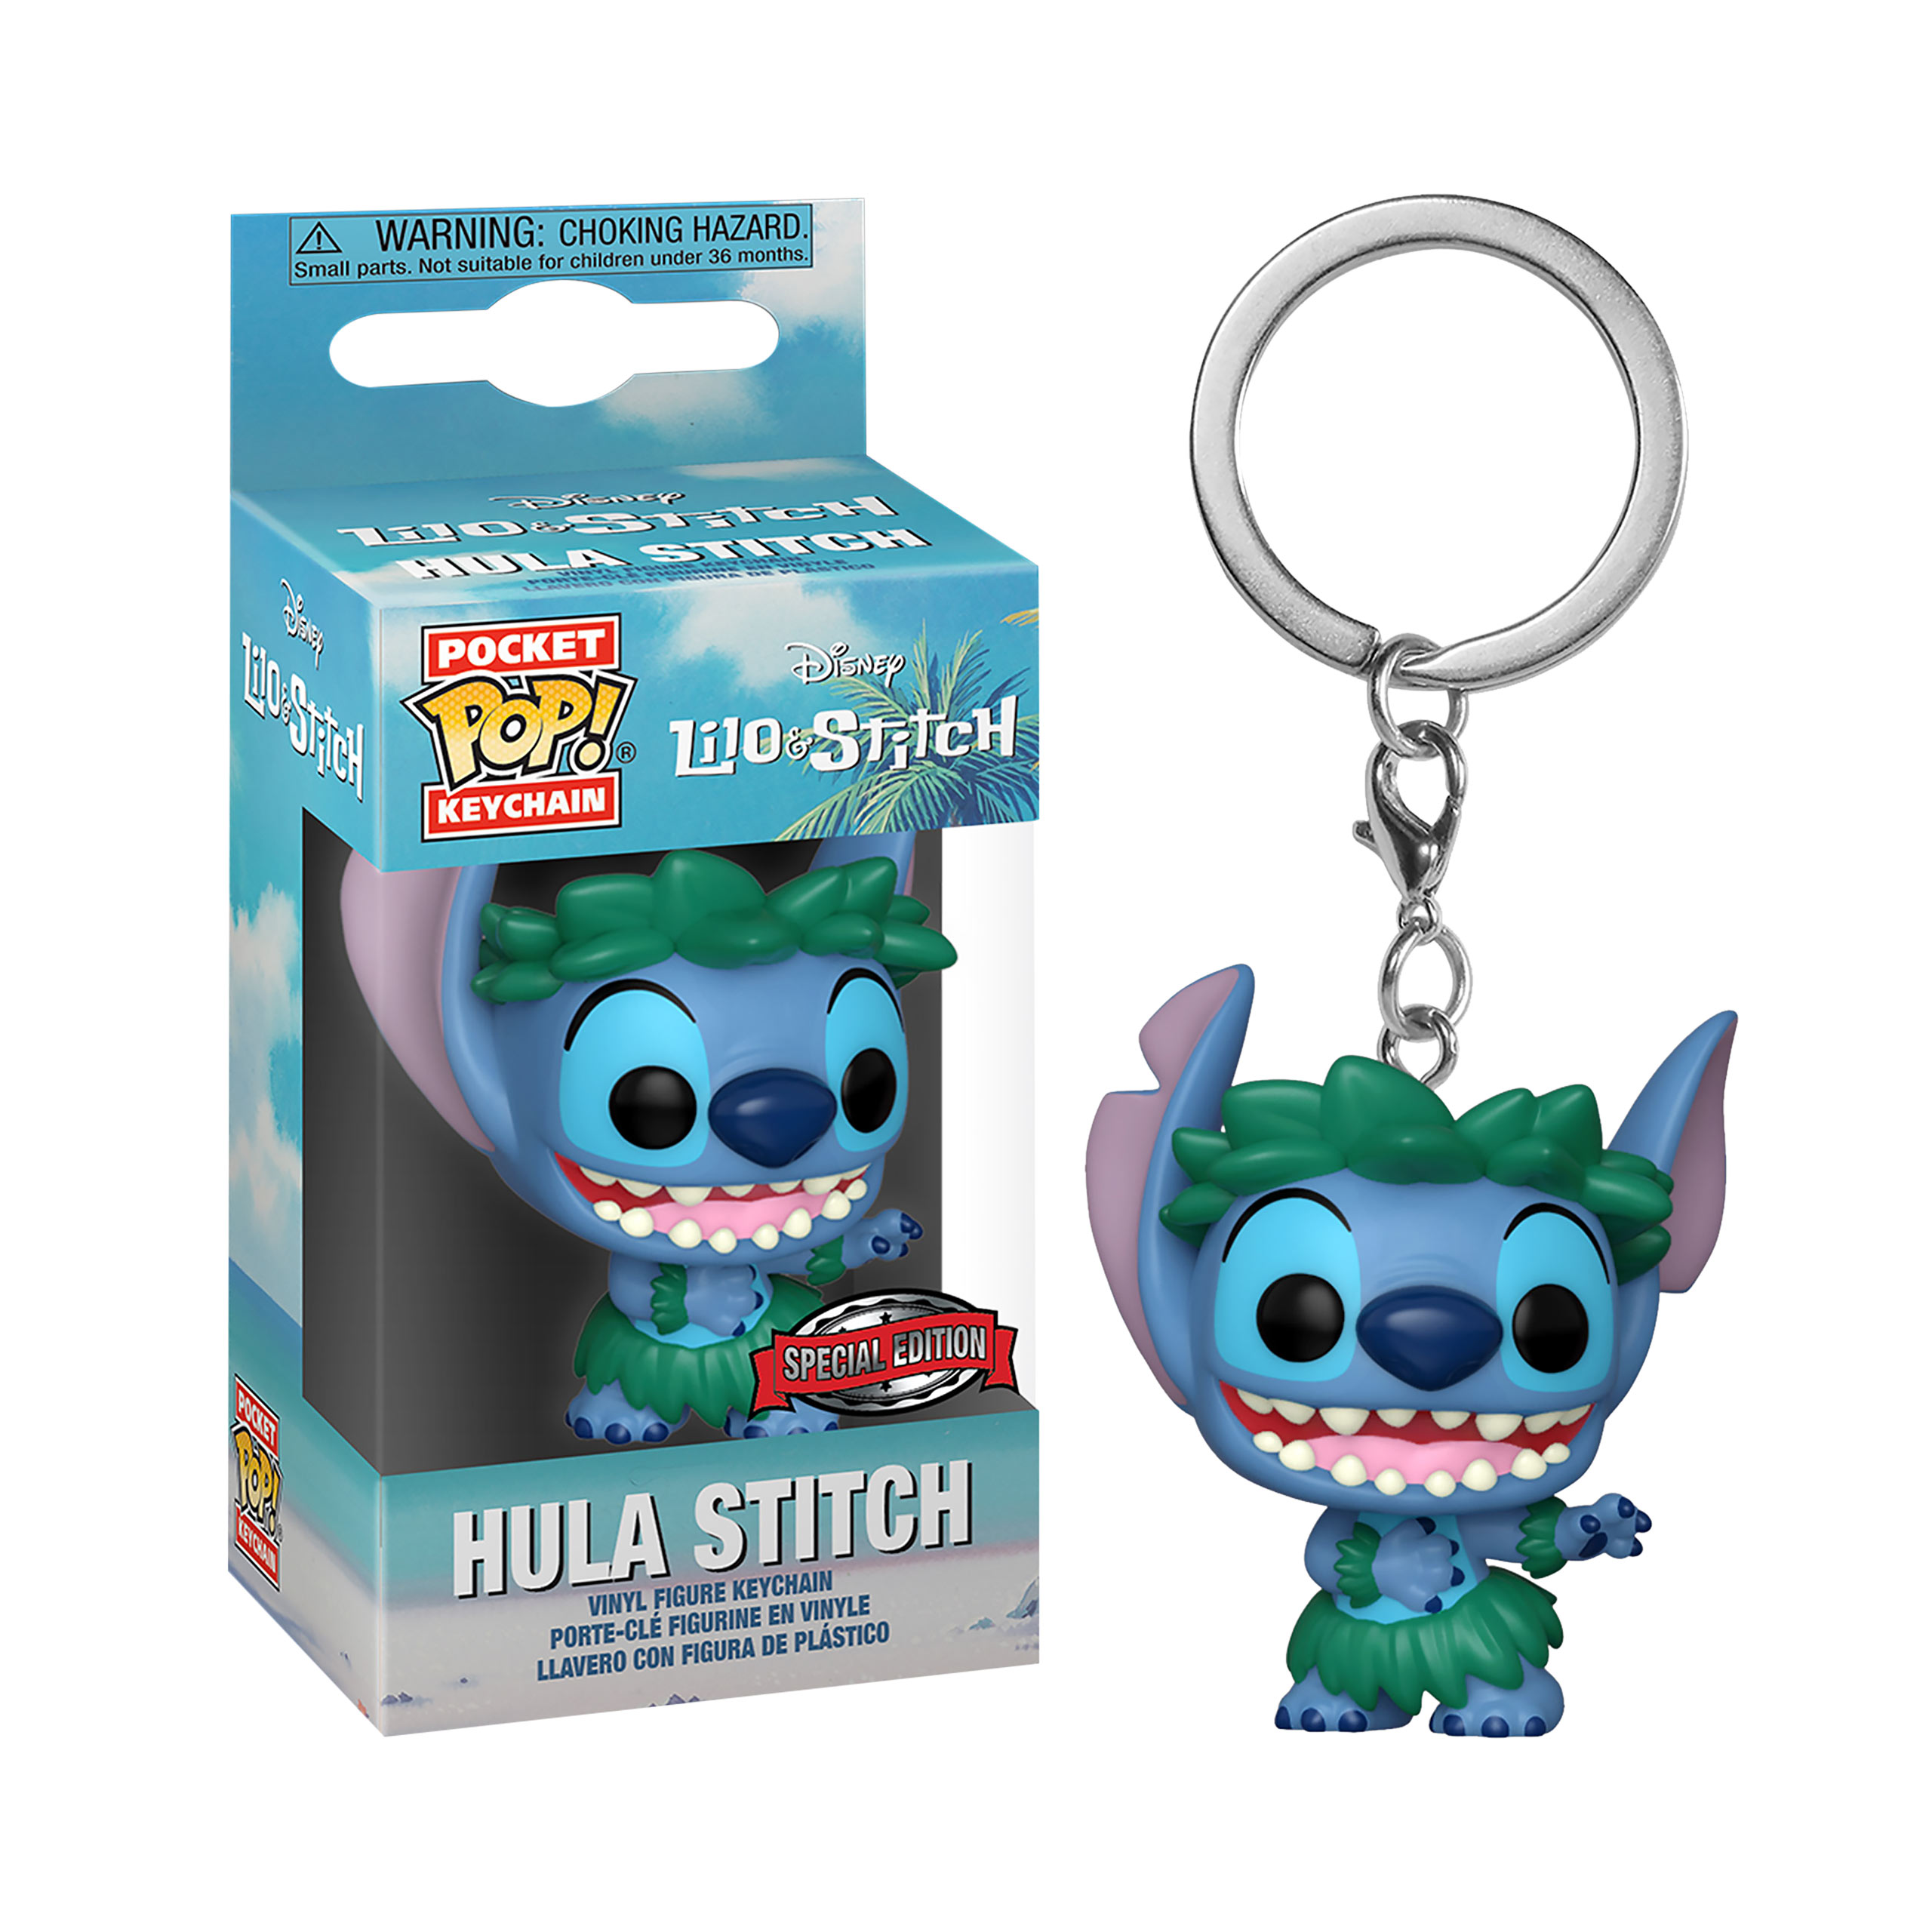 Lilo & Stitch - Hula Stitch Funko Pop Keychain